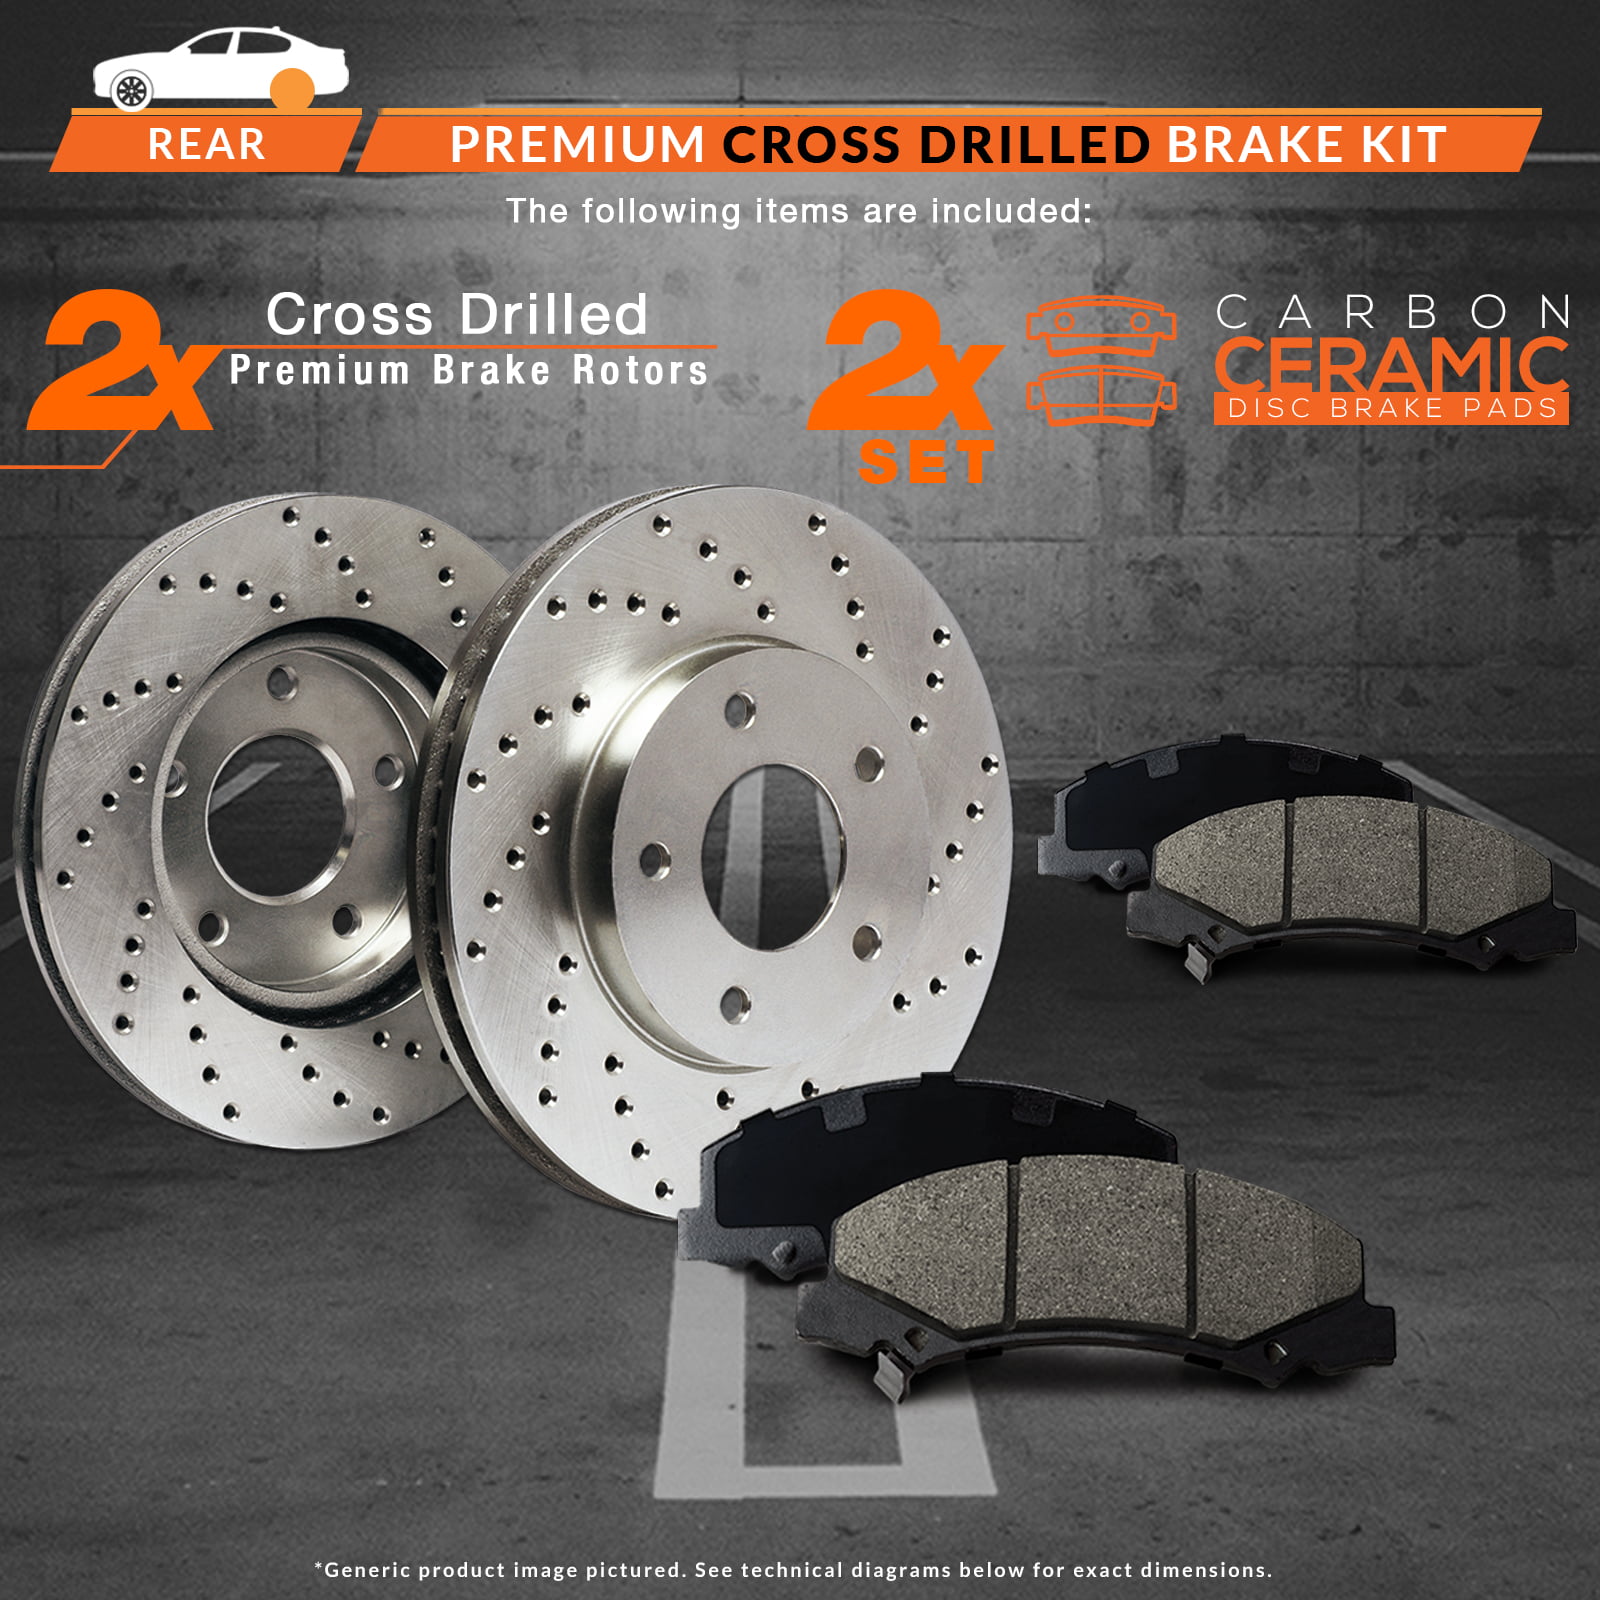 Max Brakes Rear Premium XD Rotors and Ceramic Pads Brake Kit KT081522-2